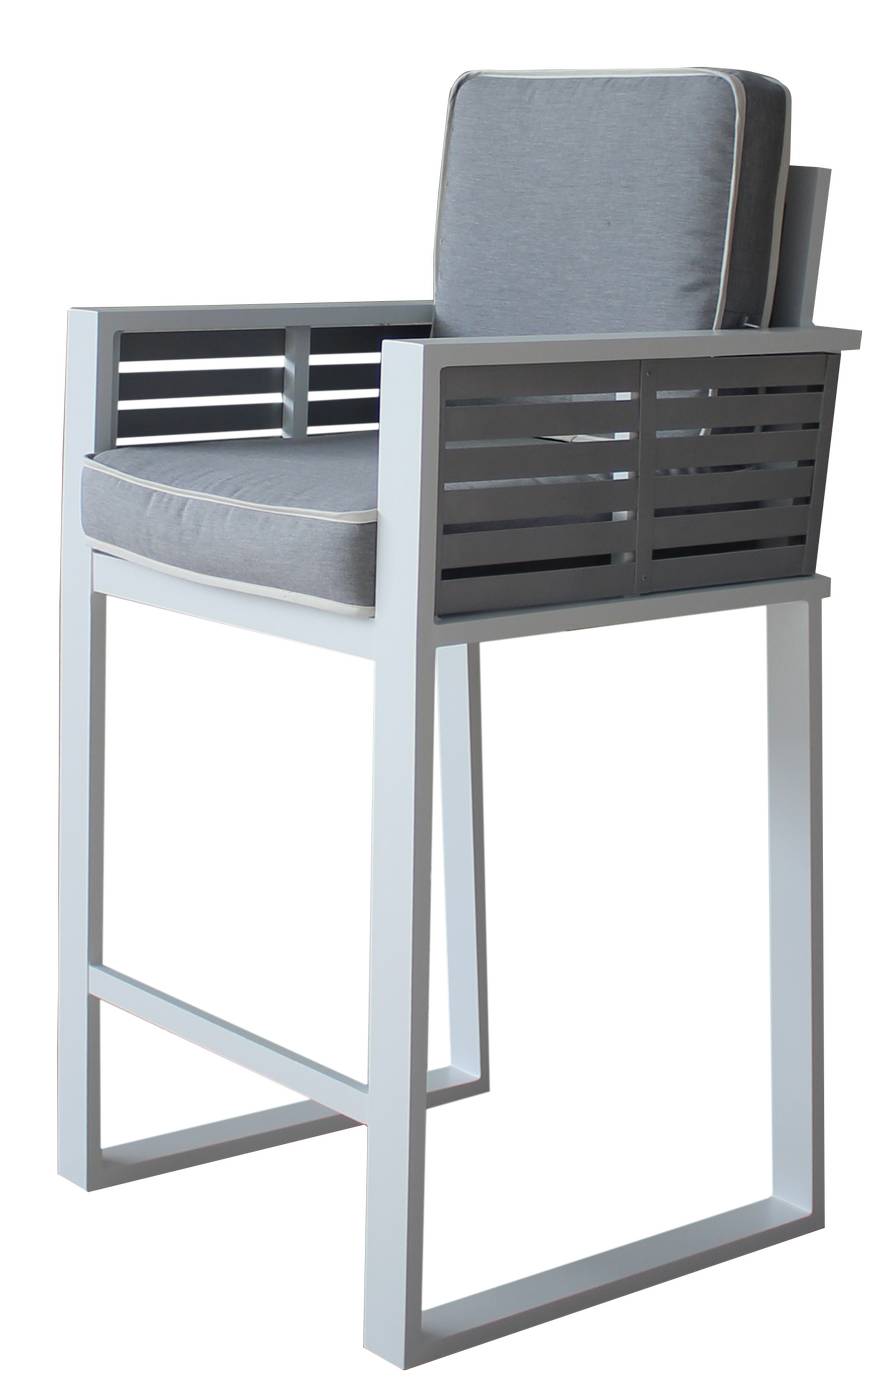 Exclusivo taburete bar de aluminio bicolor. Con cojines gran confort asiento y respaldo desenfundables.